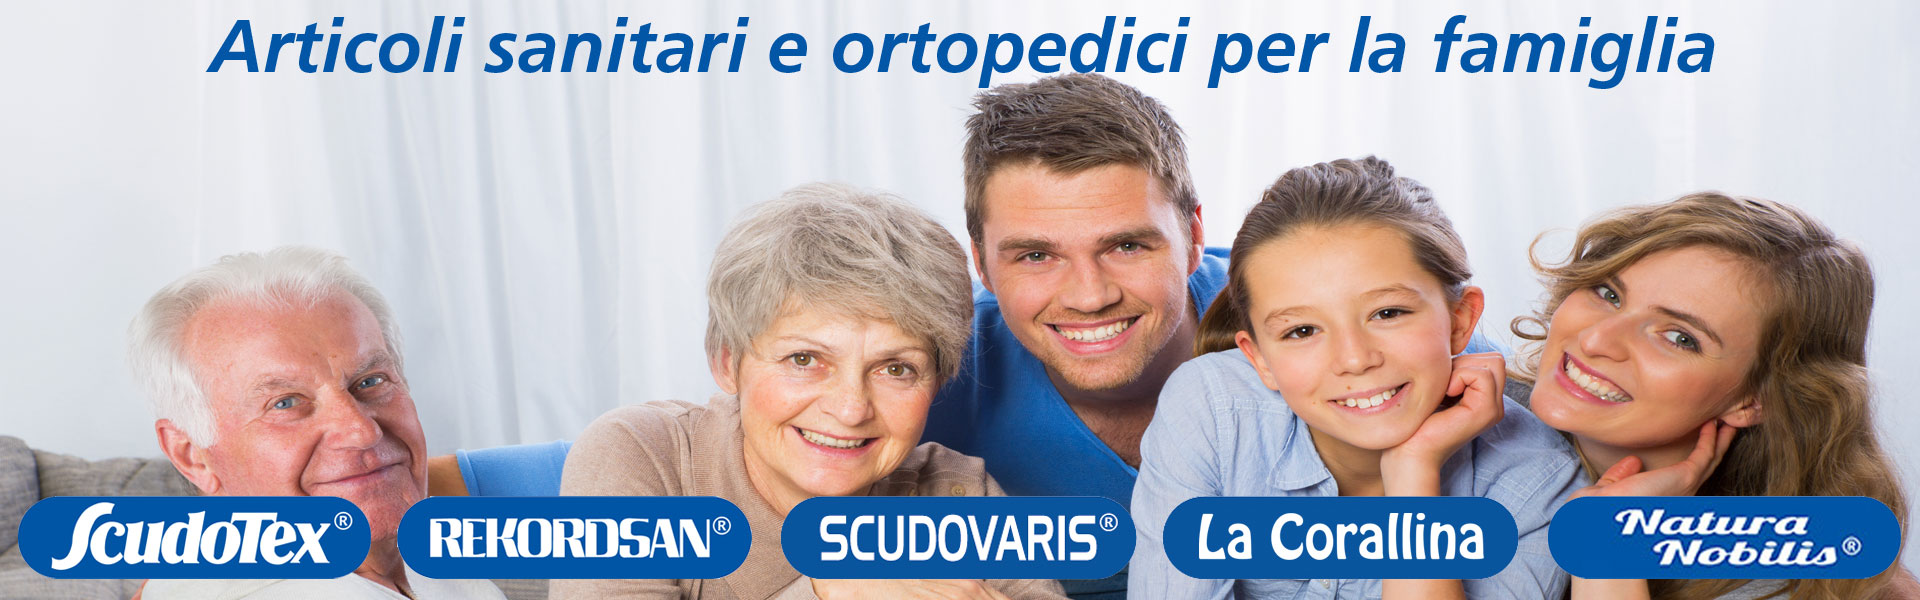 968 - Luropas, Prodotti ortopedici